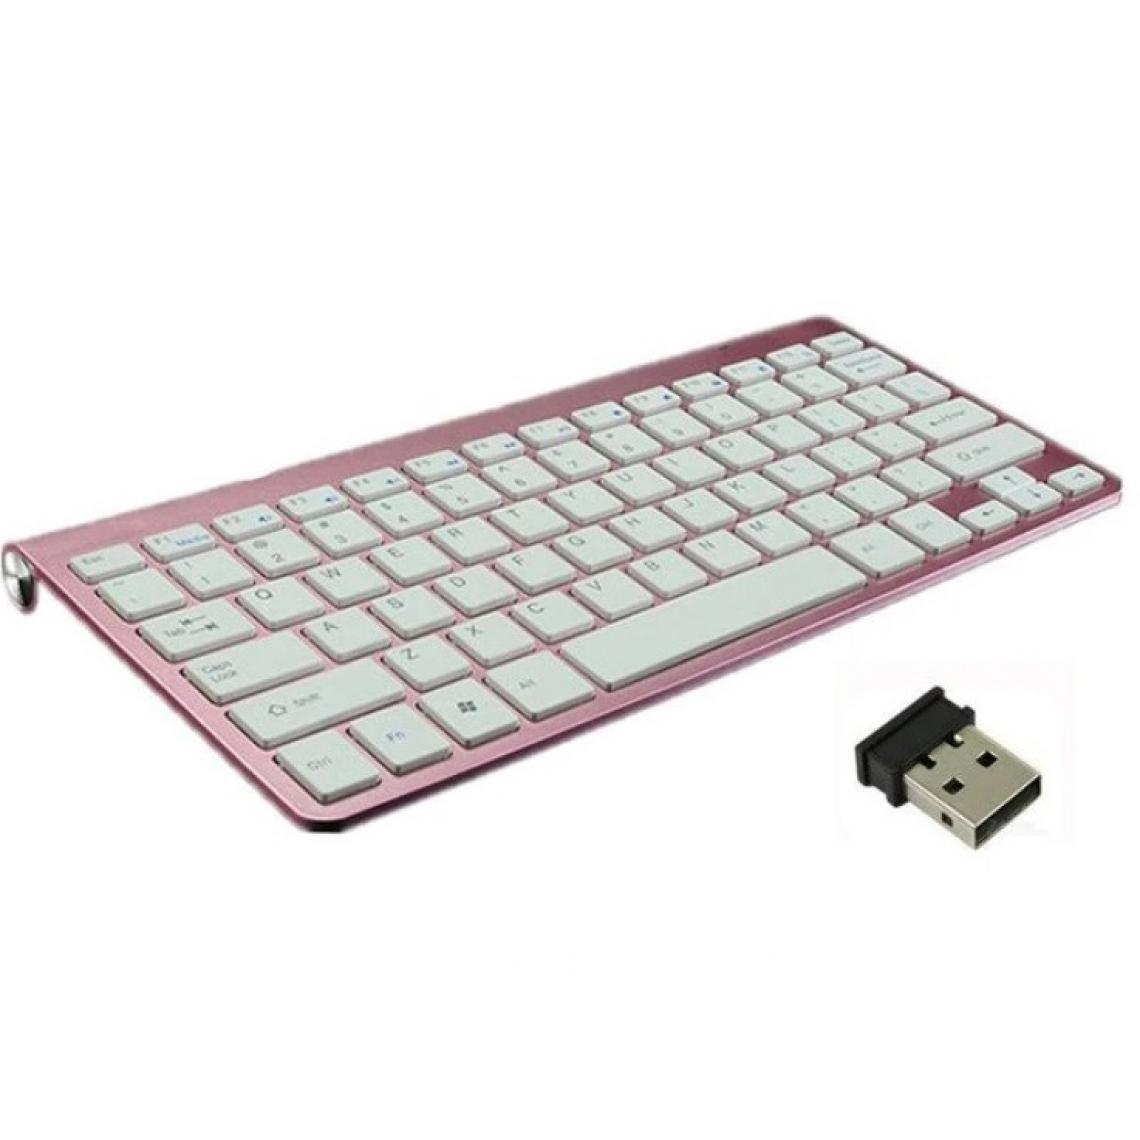 Shot - Clavier Sans Fil Metal pour PC ORDISSIMO USB QWERTY Piles (ROSE) - Clavier